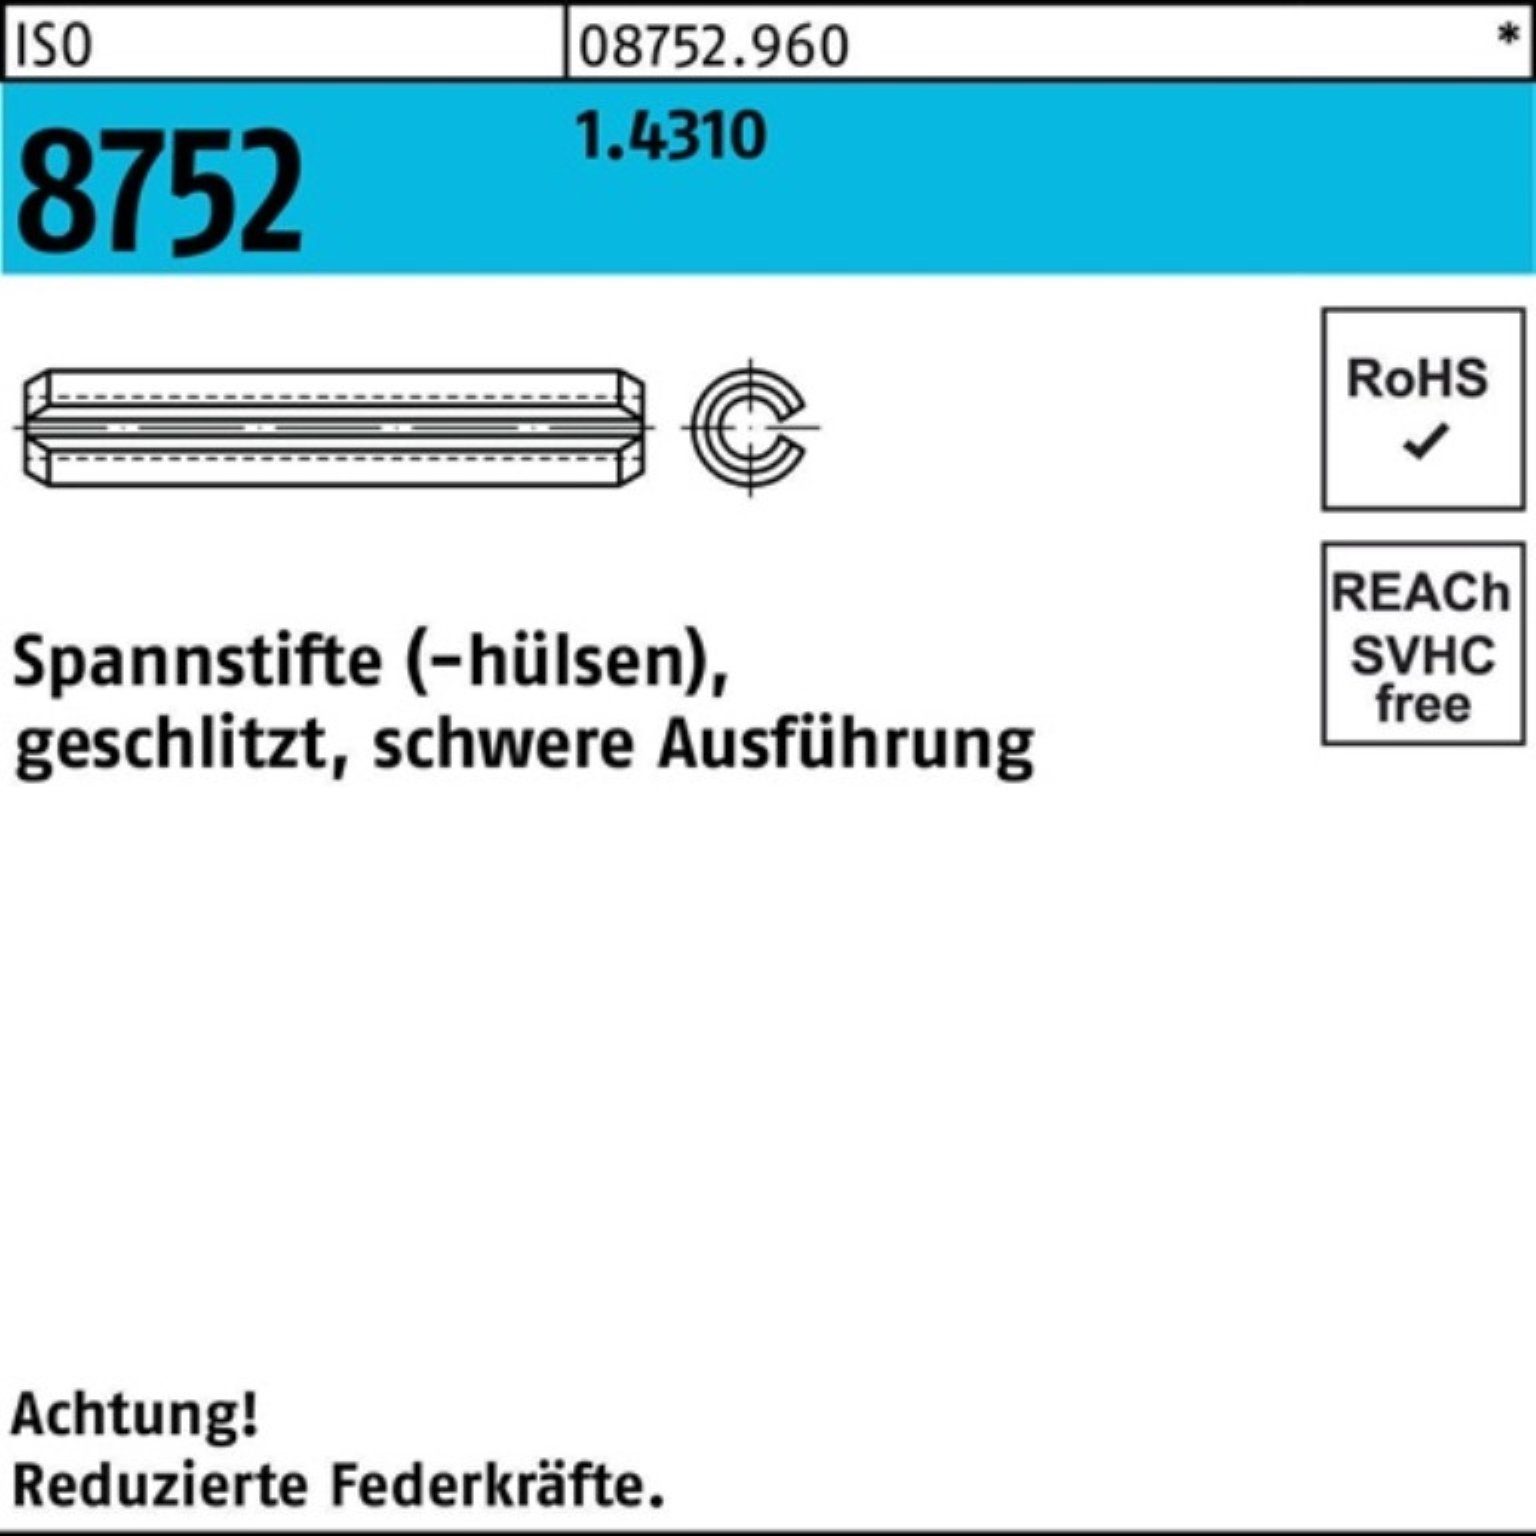 Reyher Spannstift Pack Spannstift geschlitzt 100er 1x schwere 16 8752 ISO 1.4310 Ausf. 1